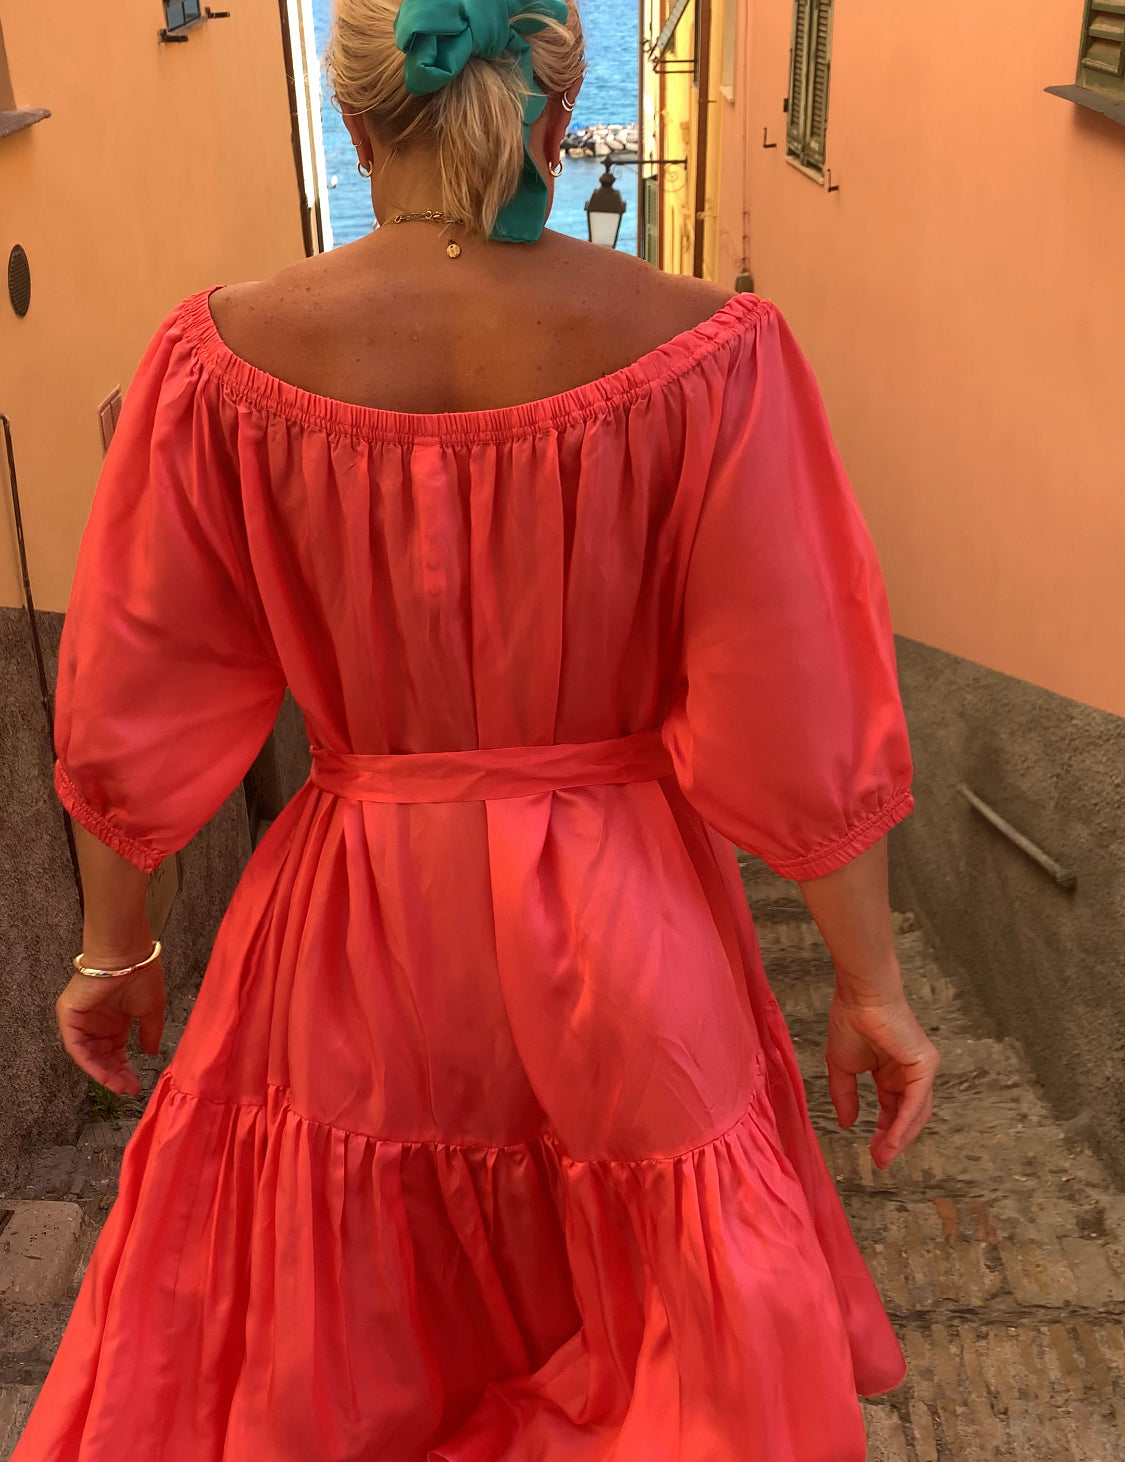 Woman in Ausus maxi dress spritz orange in Liguria Italy